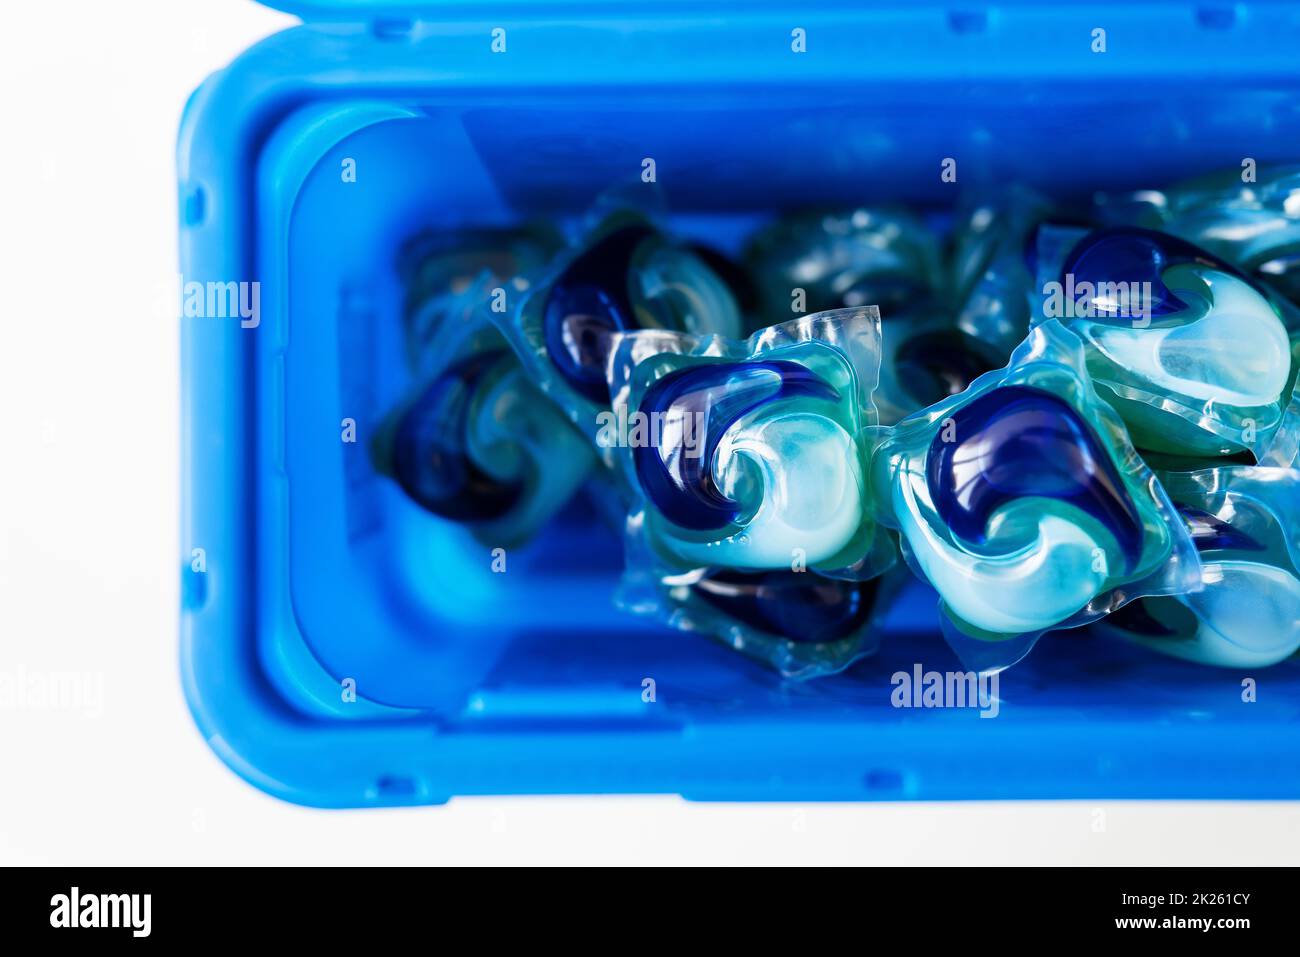 Los polvos de lavado en cápsulas de varios colores se encuentran en una caja de plástico azul. El concepto de lavado y limpieza. Foto de stock